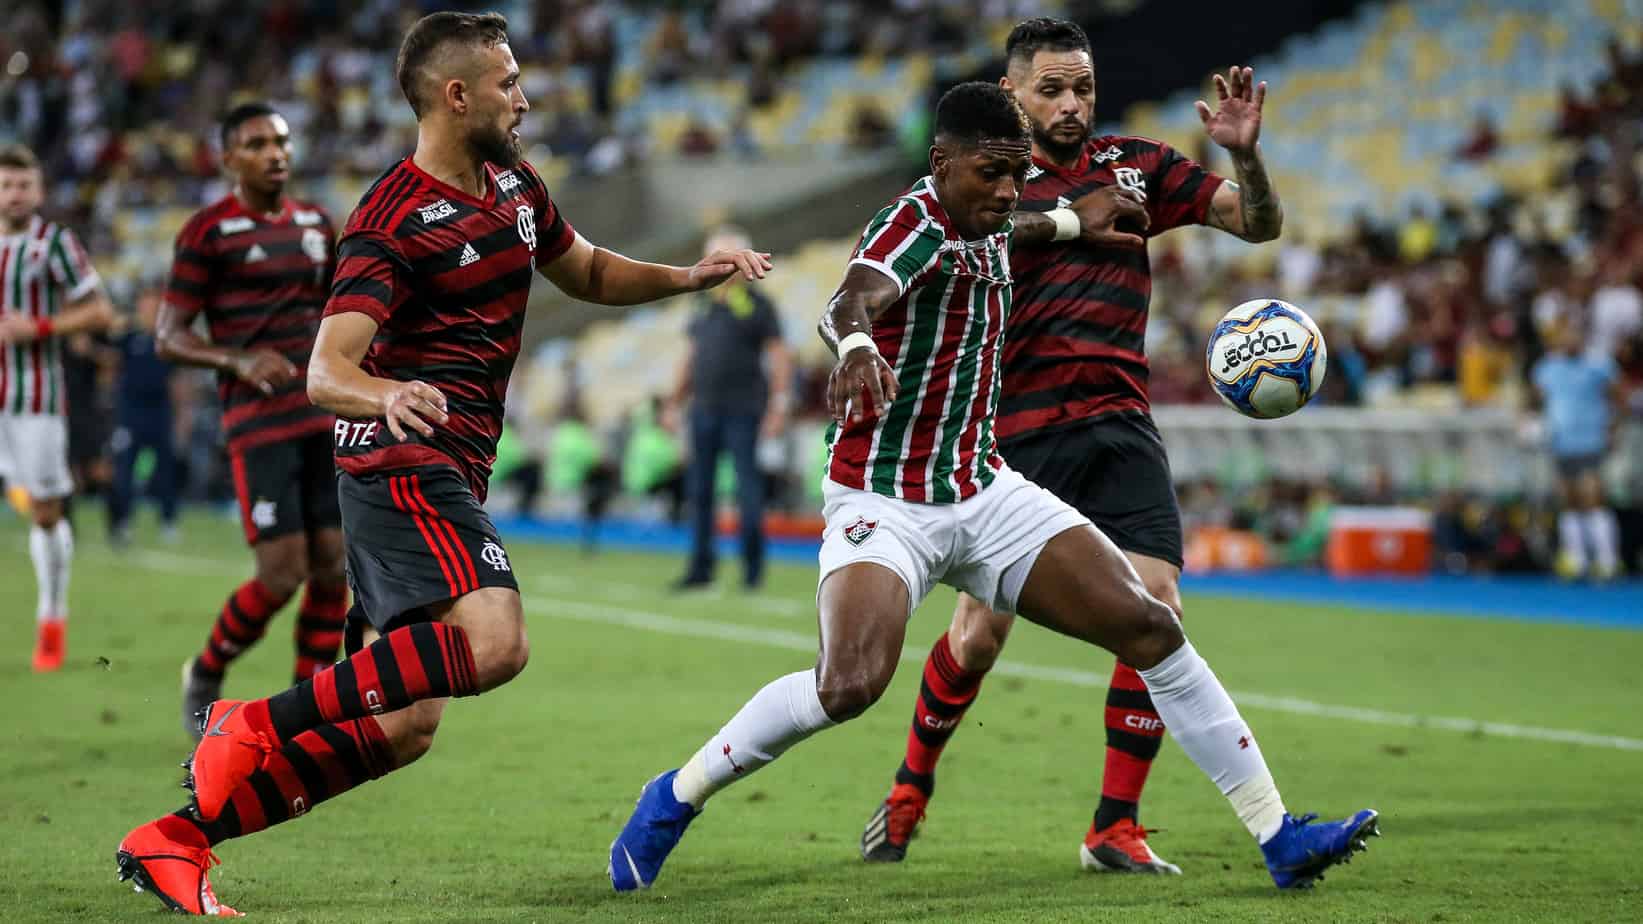 O Clássico das Multidões Retorna: Flamengo x Fluminense – Probabilidades de Aposta e Previsão